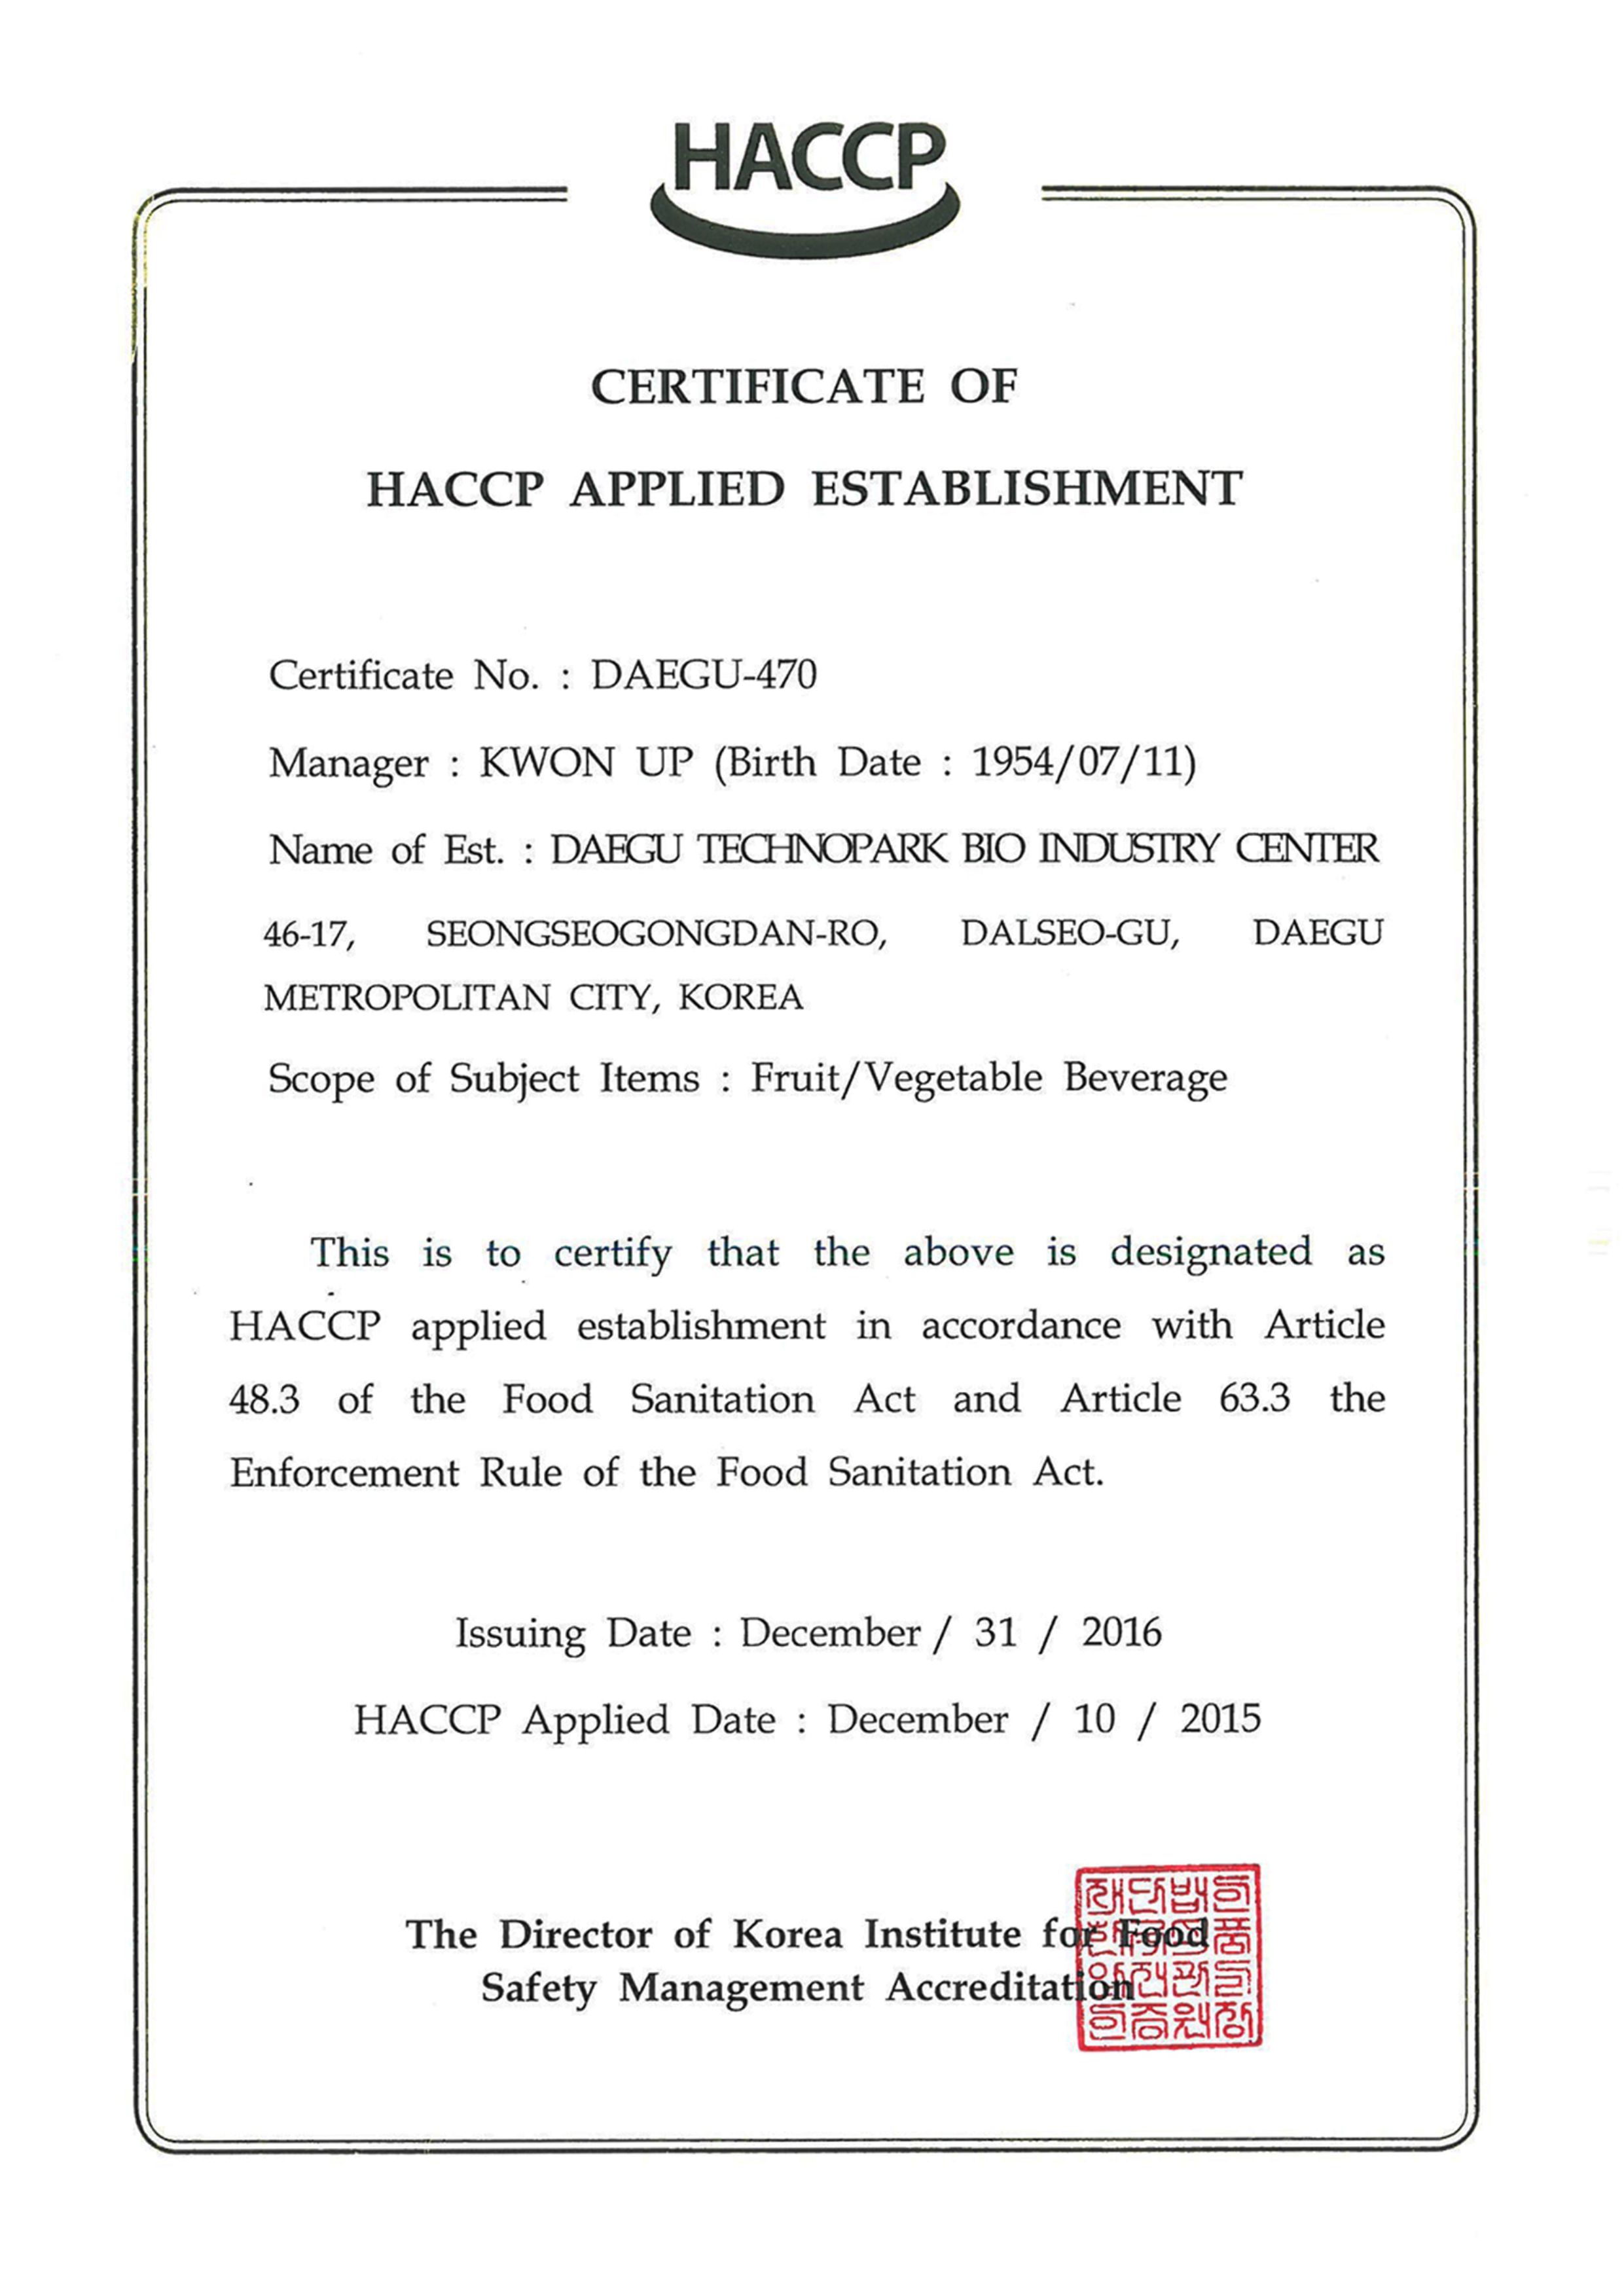 Сертификат HACCP DAEGU на английском языке